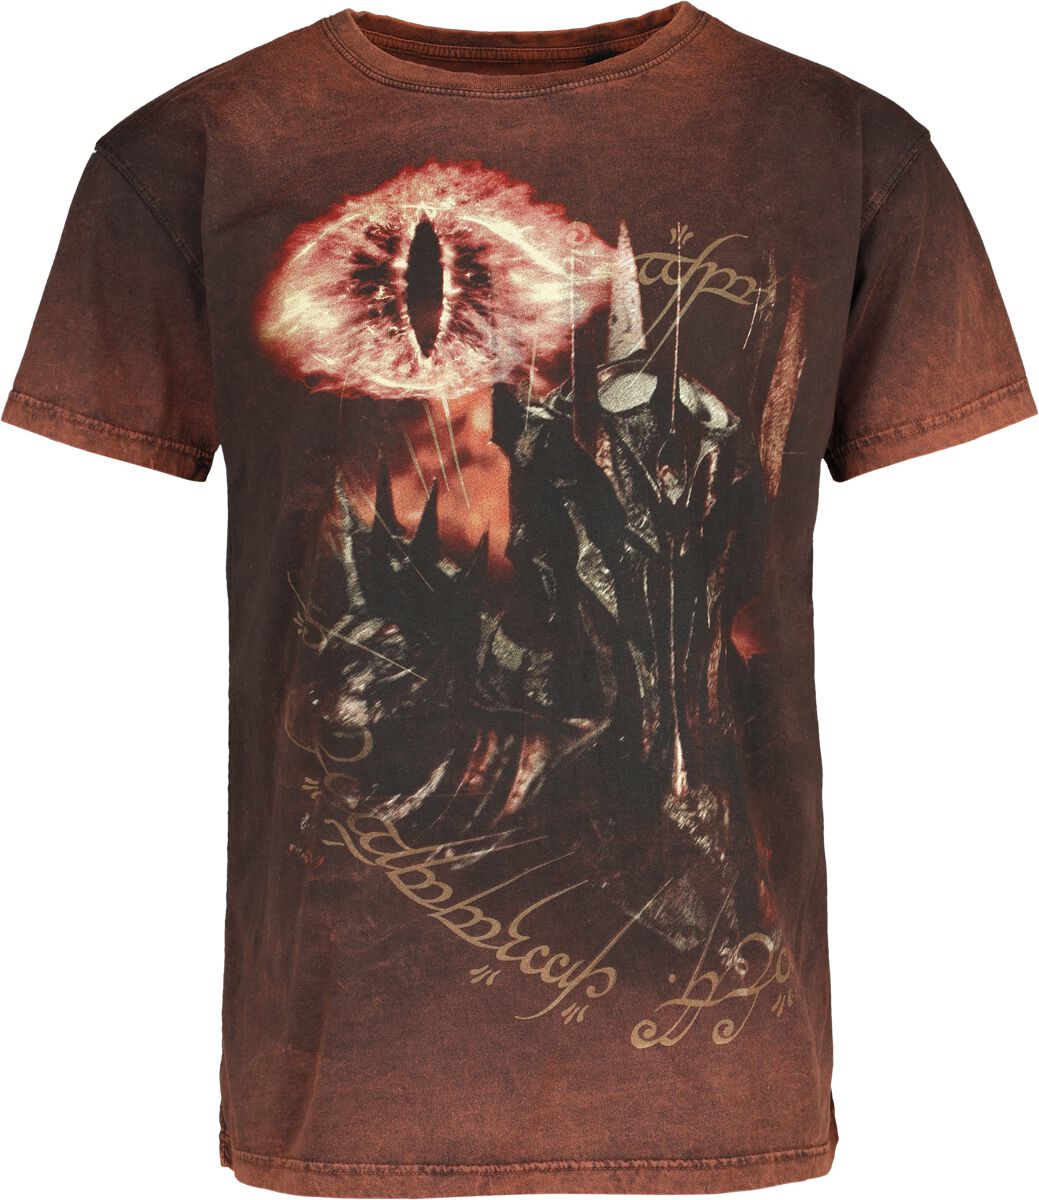 Der Herr der Ringe T-Shirt - Sauron - Eye Of Fire - S bis XXL - für Männer - Größe M - multicolor  - EMP exklusives Merchandise!